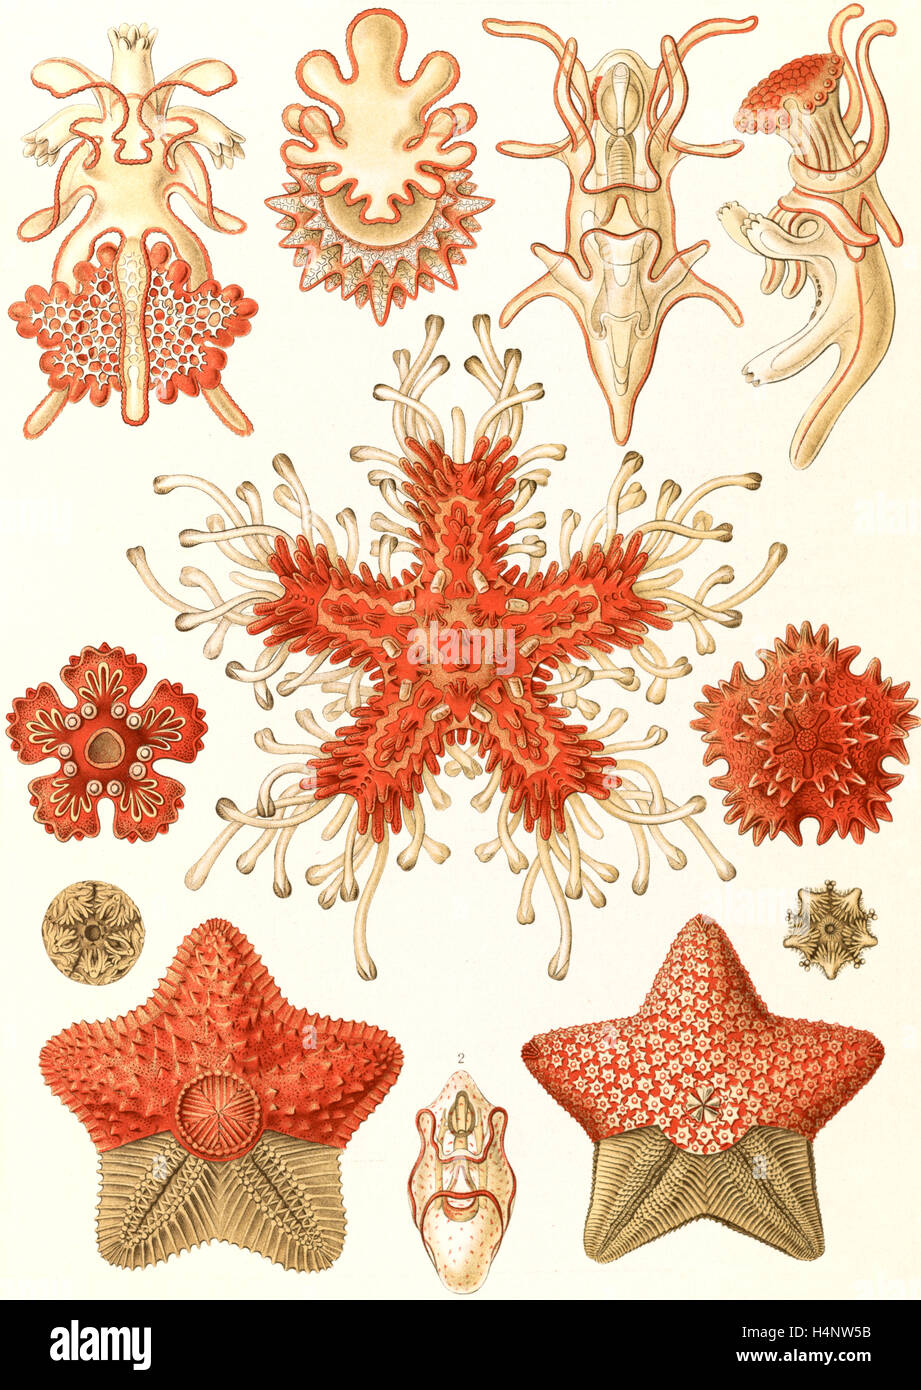 L'illustration montre les étoiles dans le phyllum des échinodermes. Asteridea. - Seesterne, 1 : impression lithographie couleur Banque D'Images